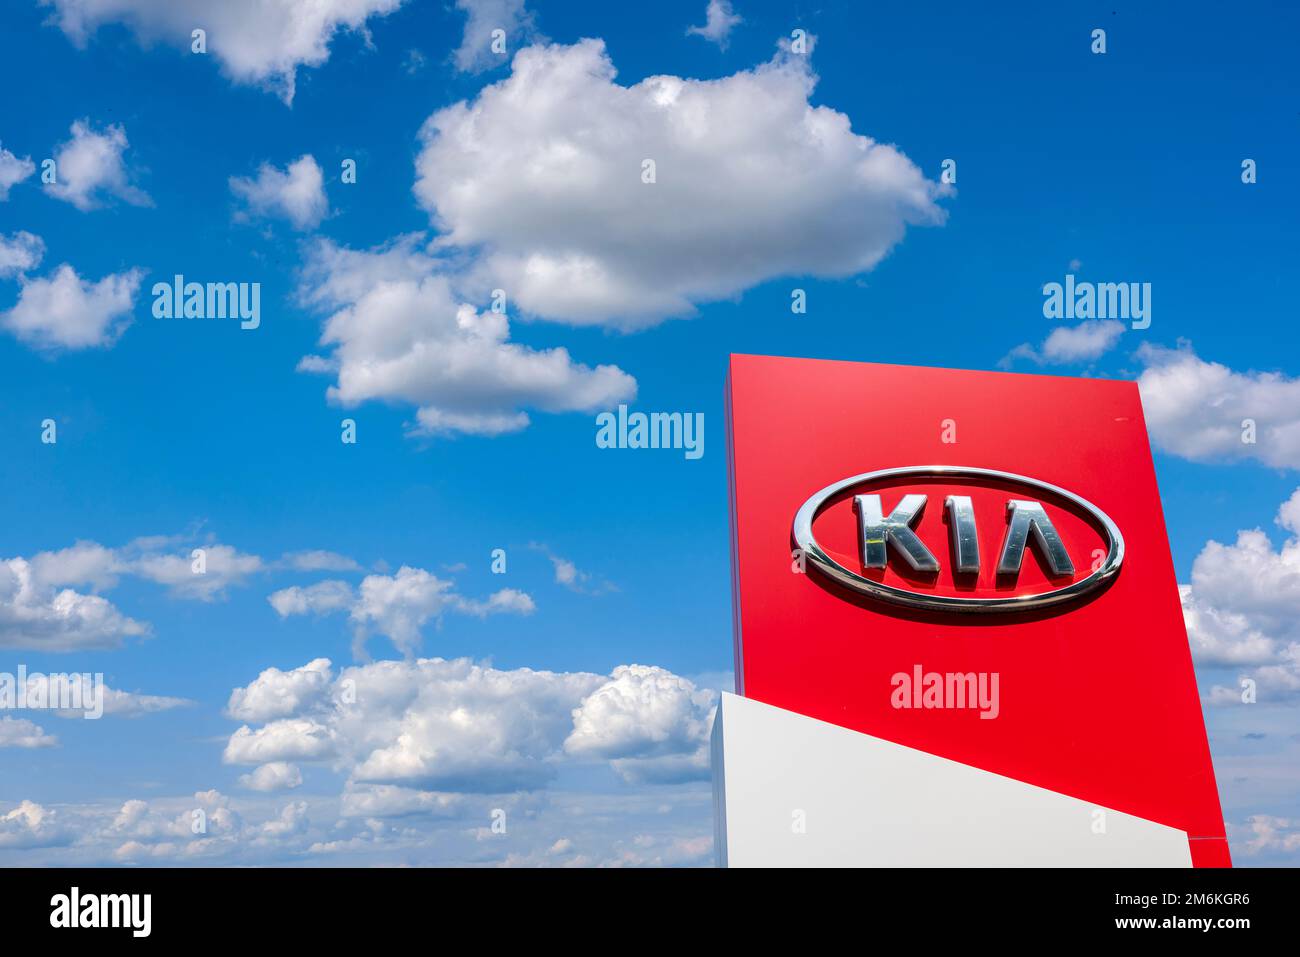 Kia car company sign and logo Stock Photo